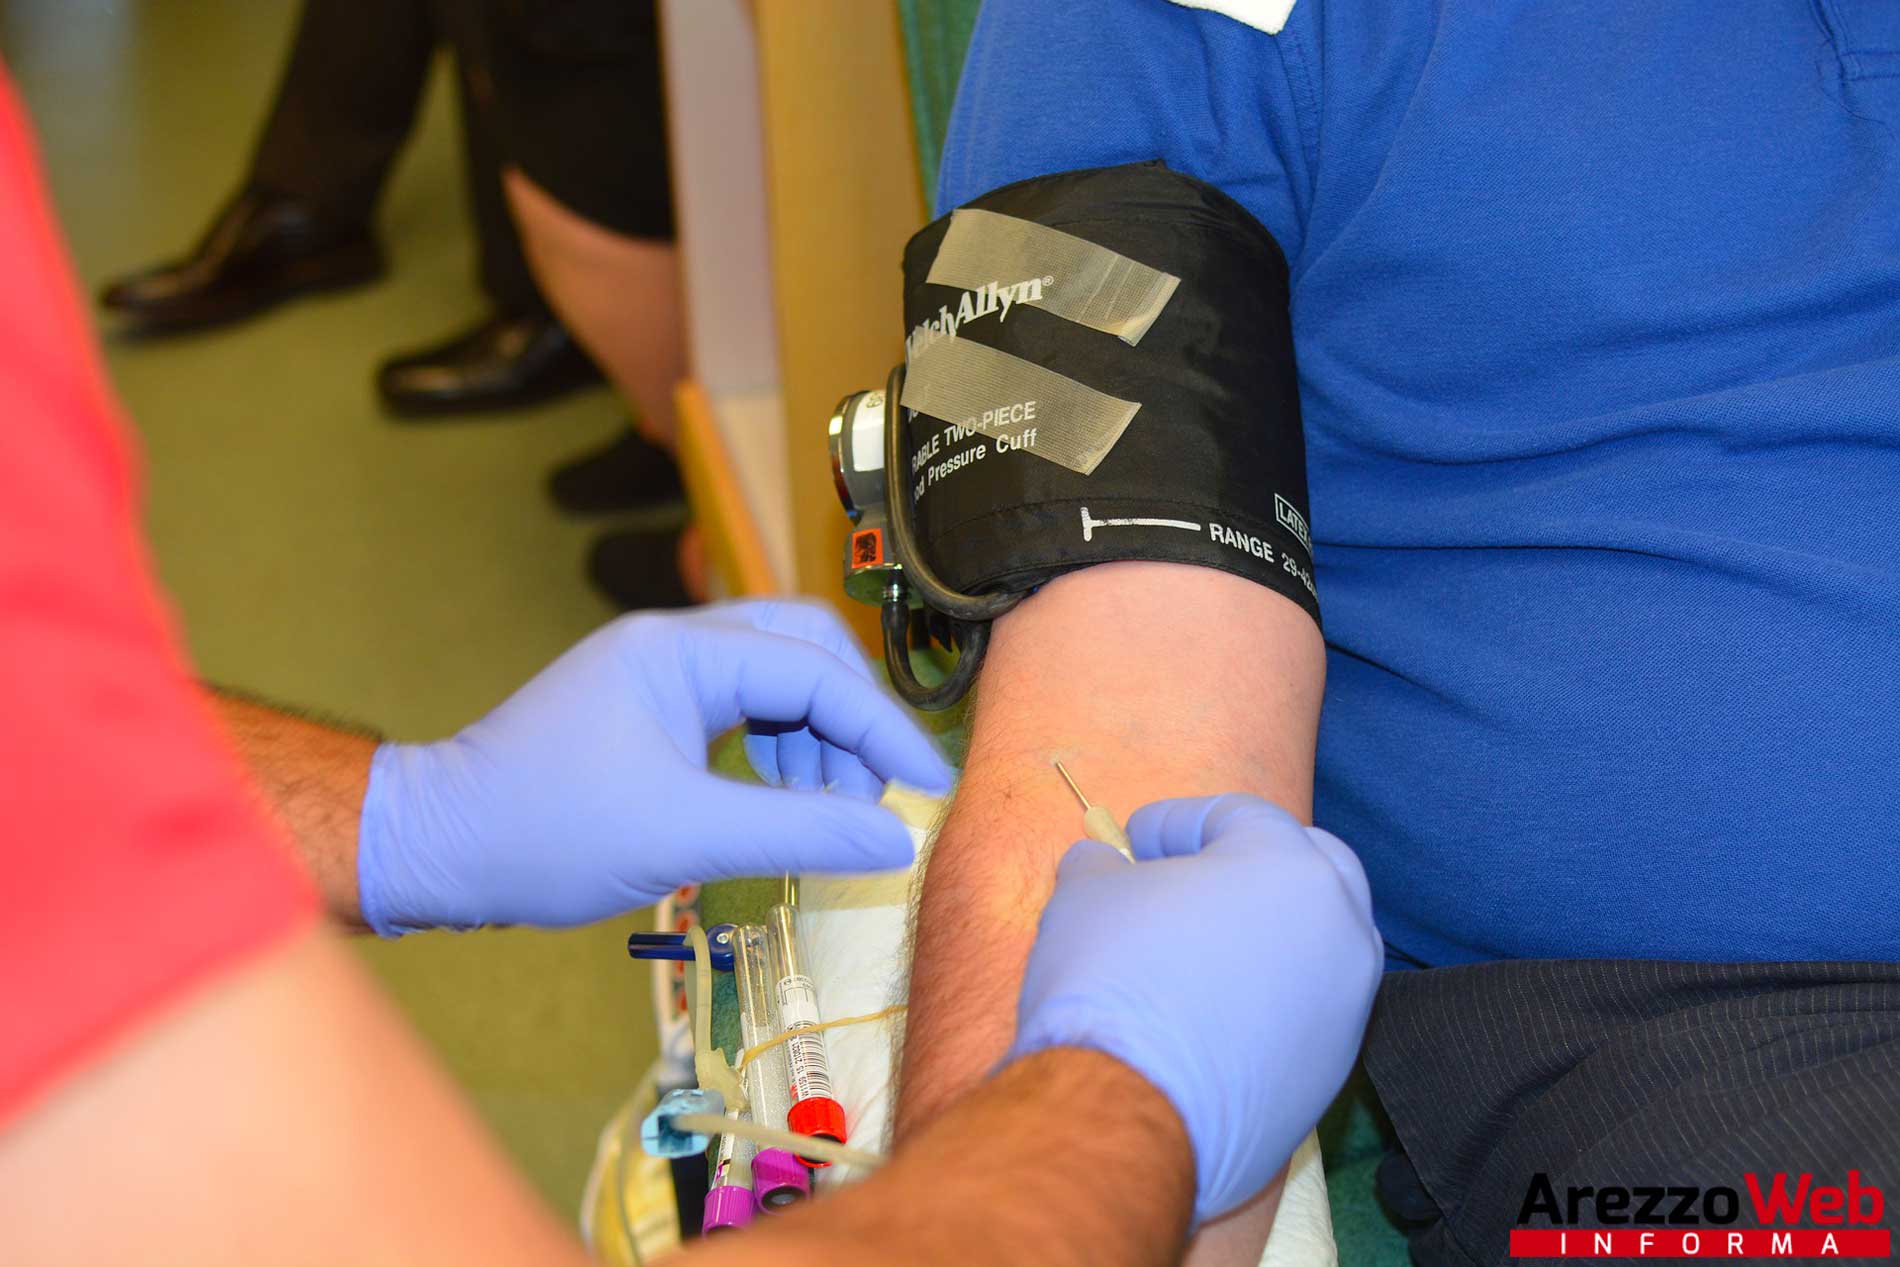 Calo delle donazioni di sangue, la Asl Toscana sud est sensibilizza i cittadini a non smettere di donare